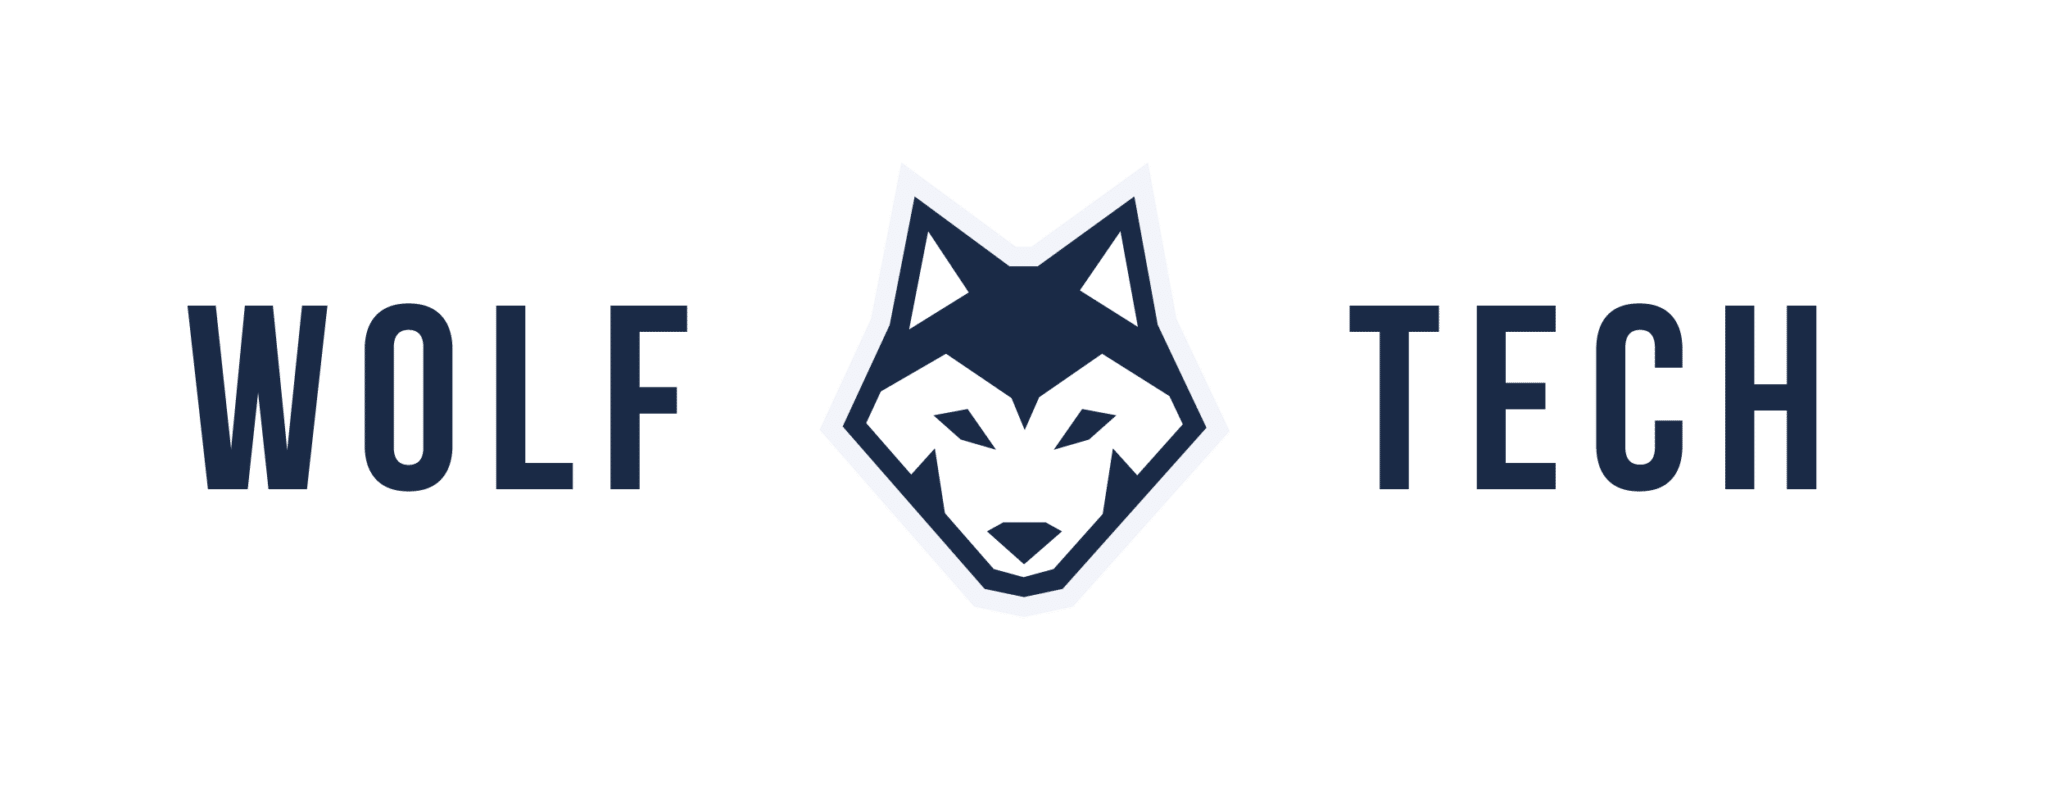 Wolf Tech logo